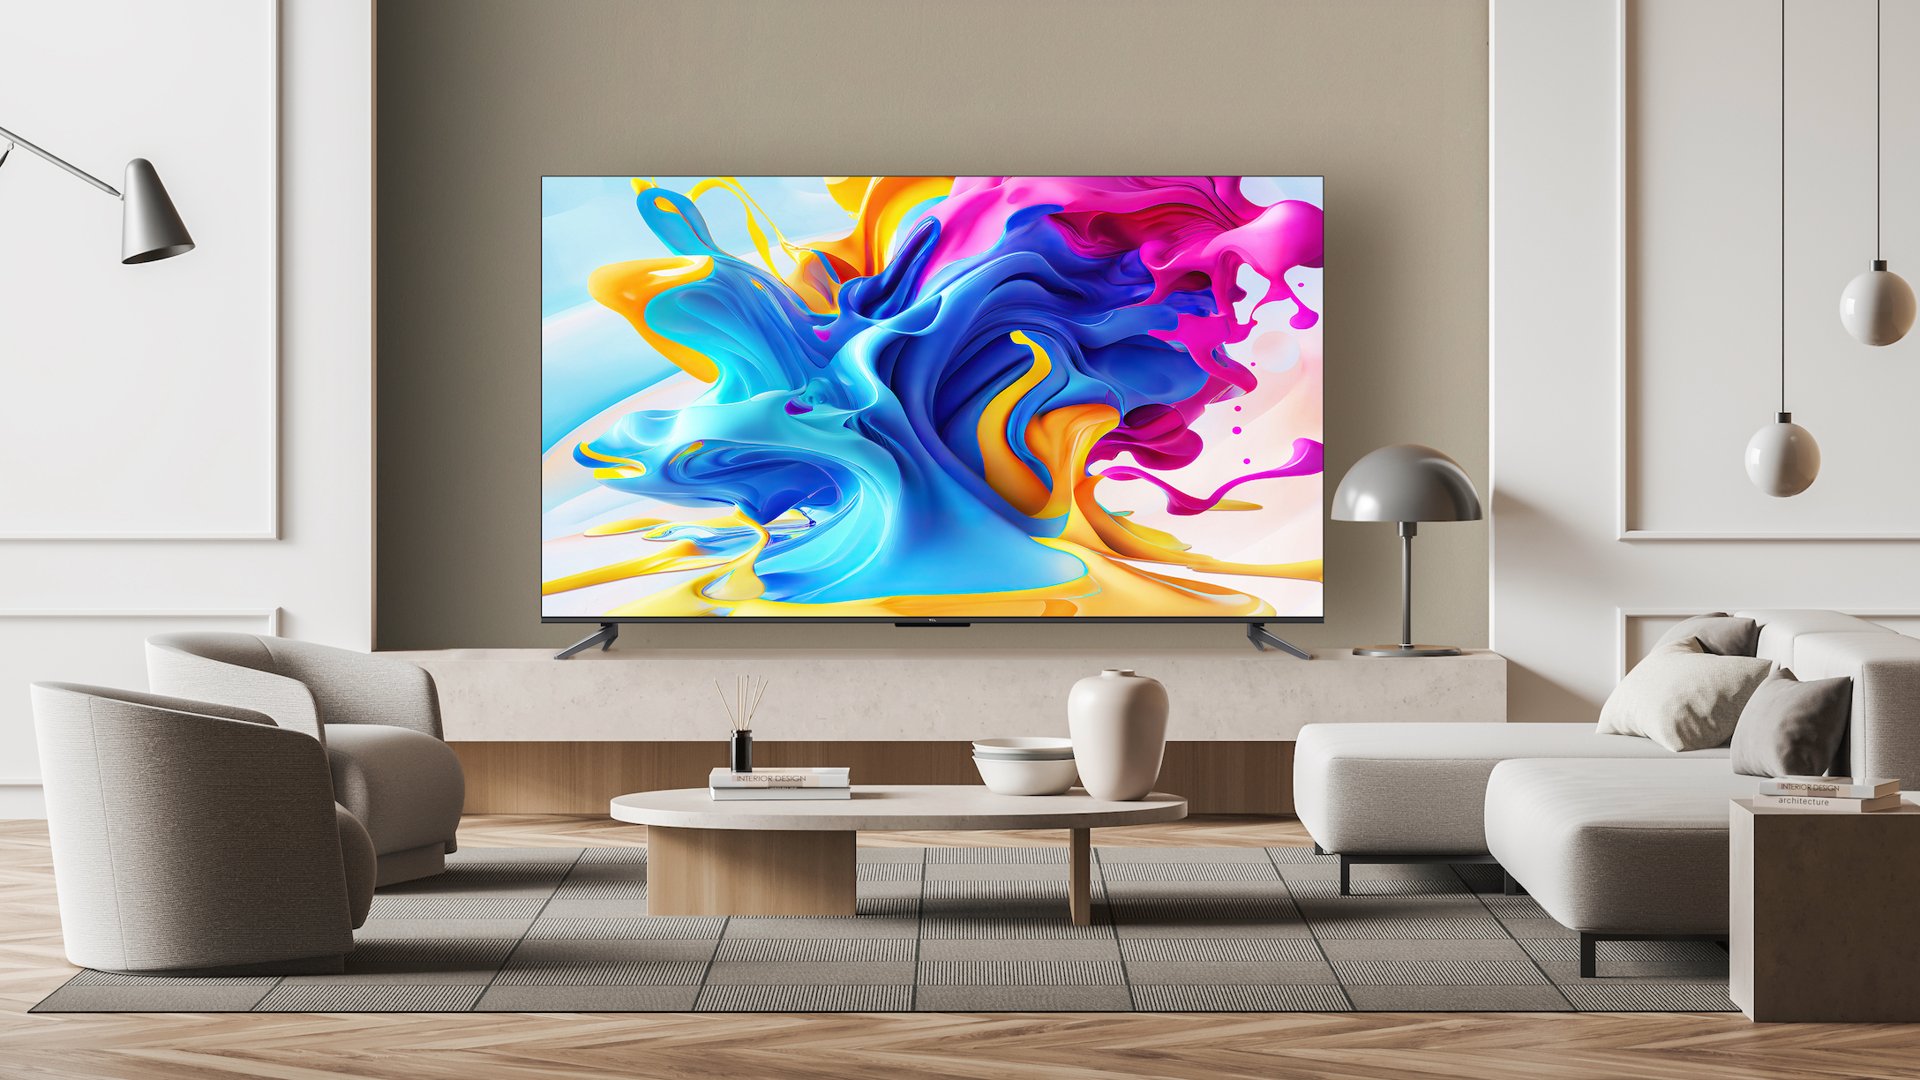 Телевизор TCL C84 на белом фоне с яркими цветами краски на экране